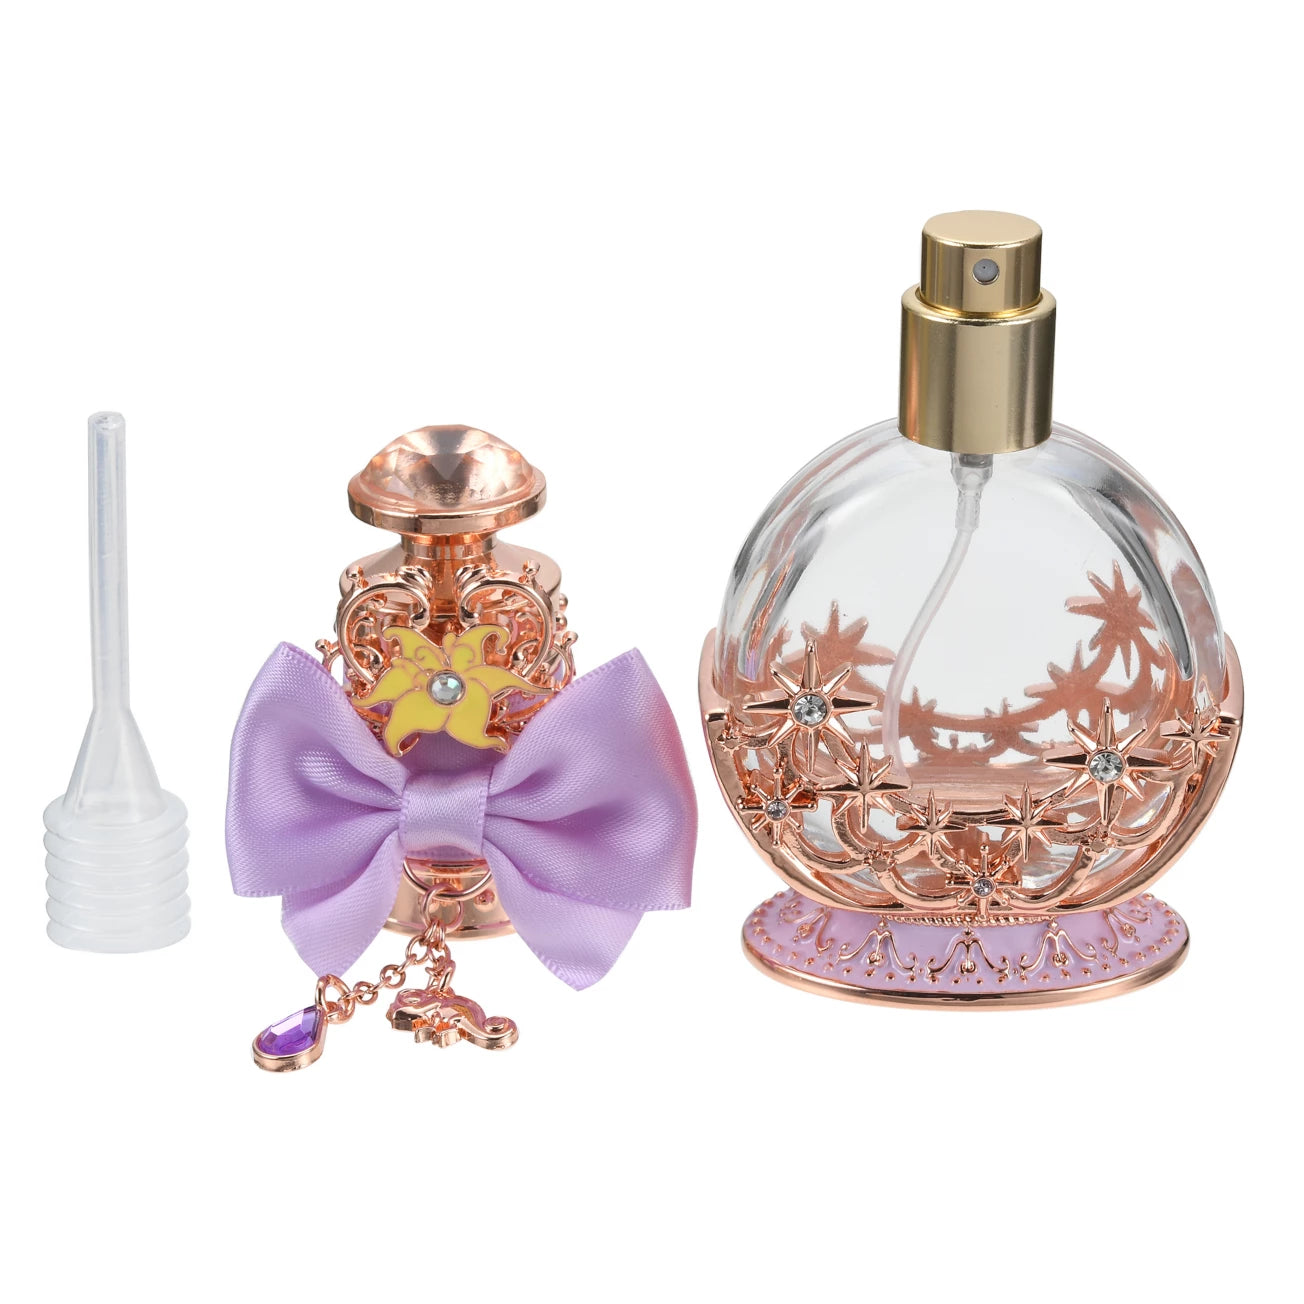 Rapunzel perfume spray bottle [In stock]